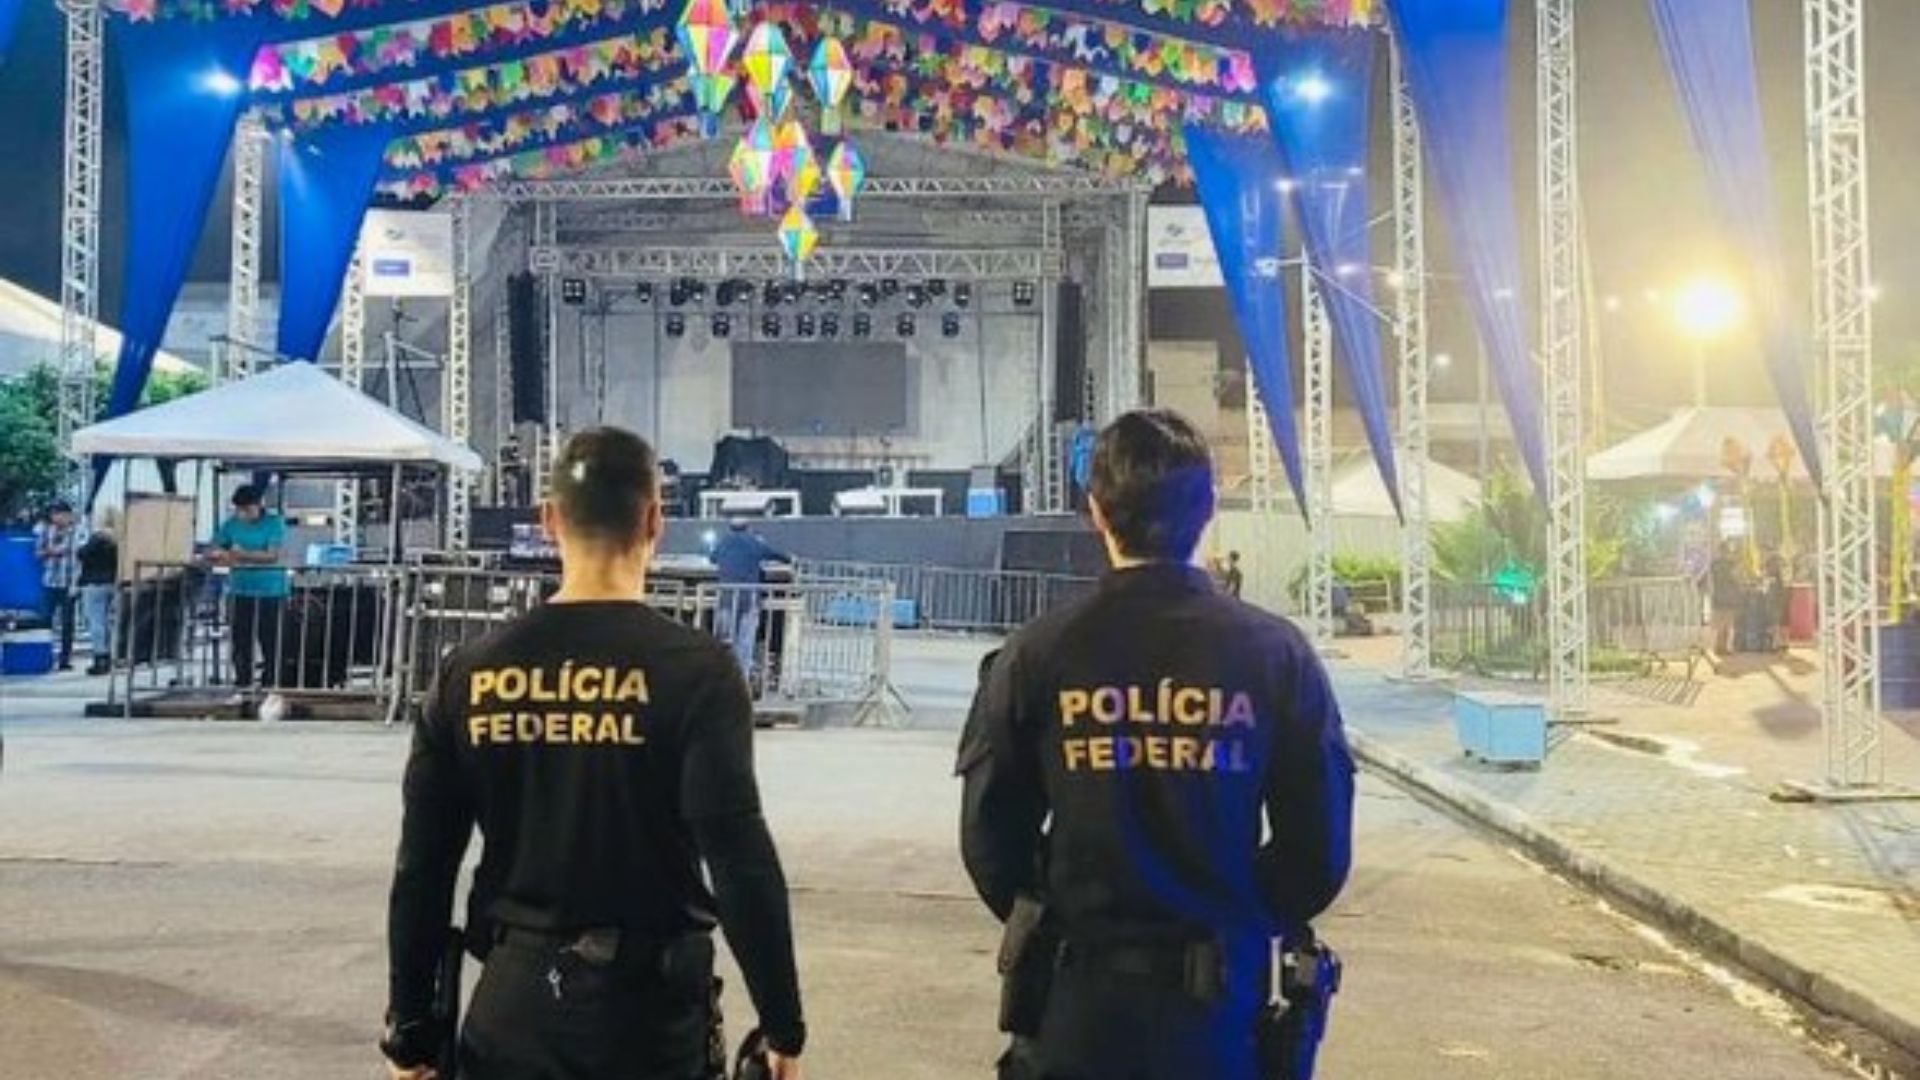 Agentes da Polícia Federal no São João de Pernambuco. Foto: Divulgação